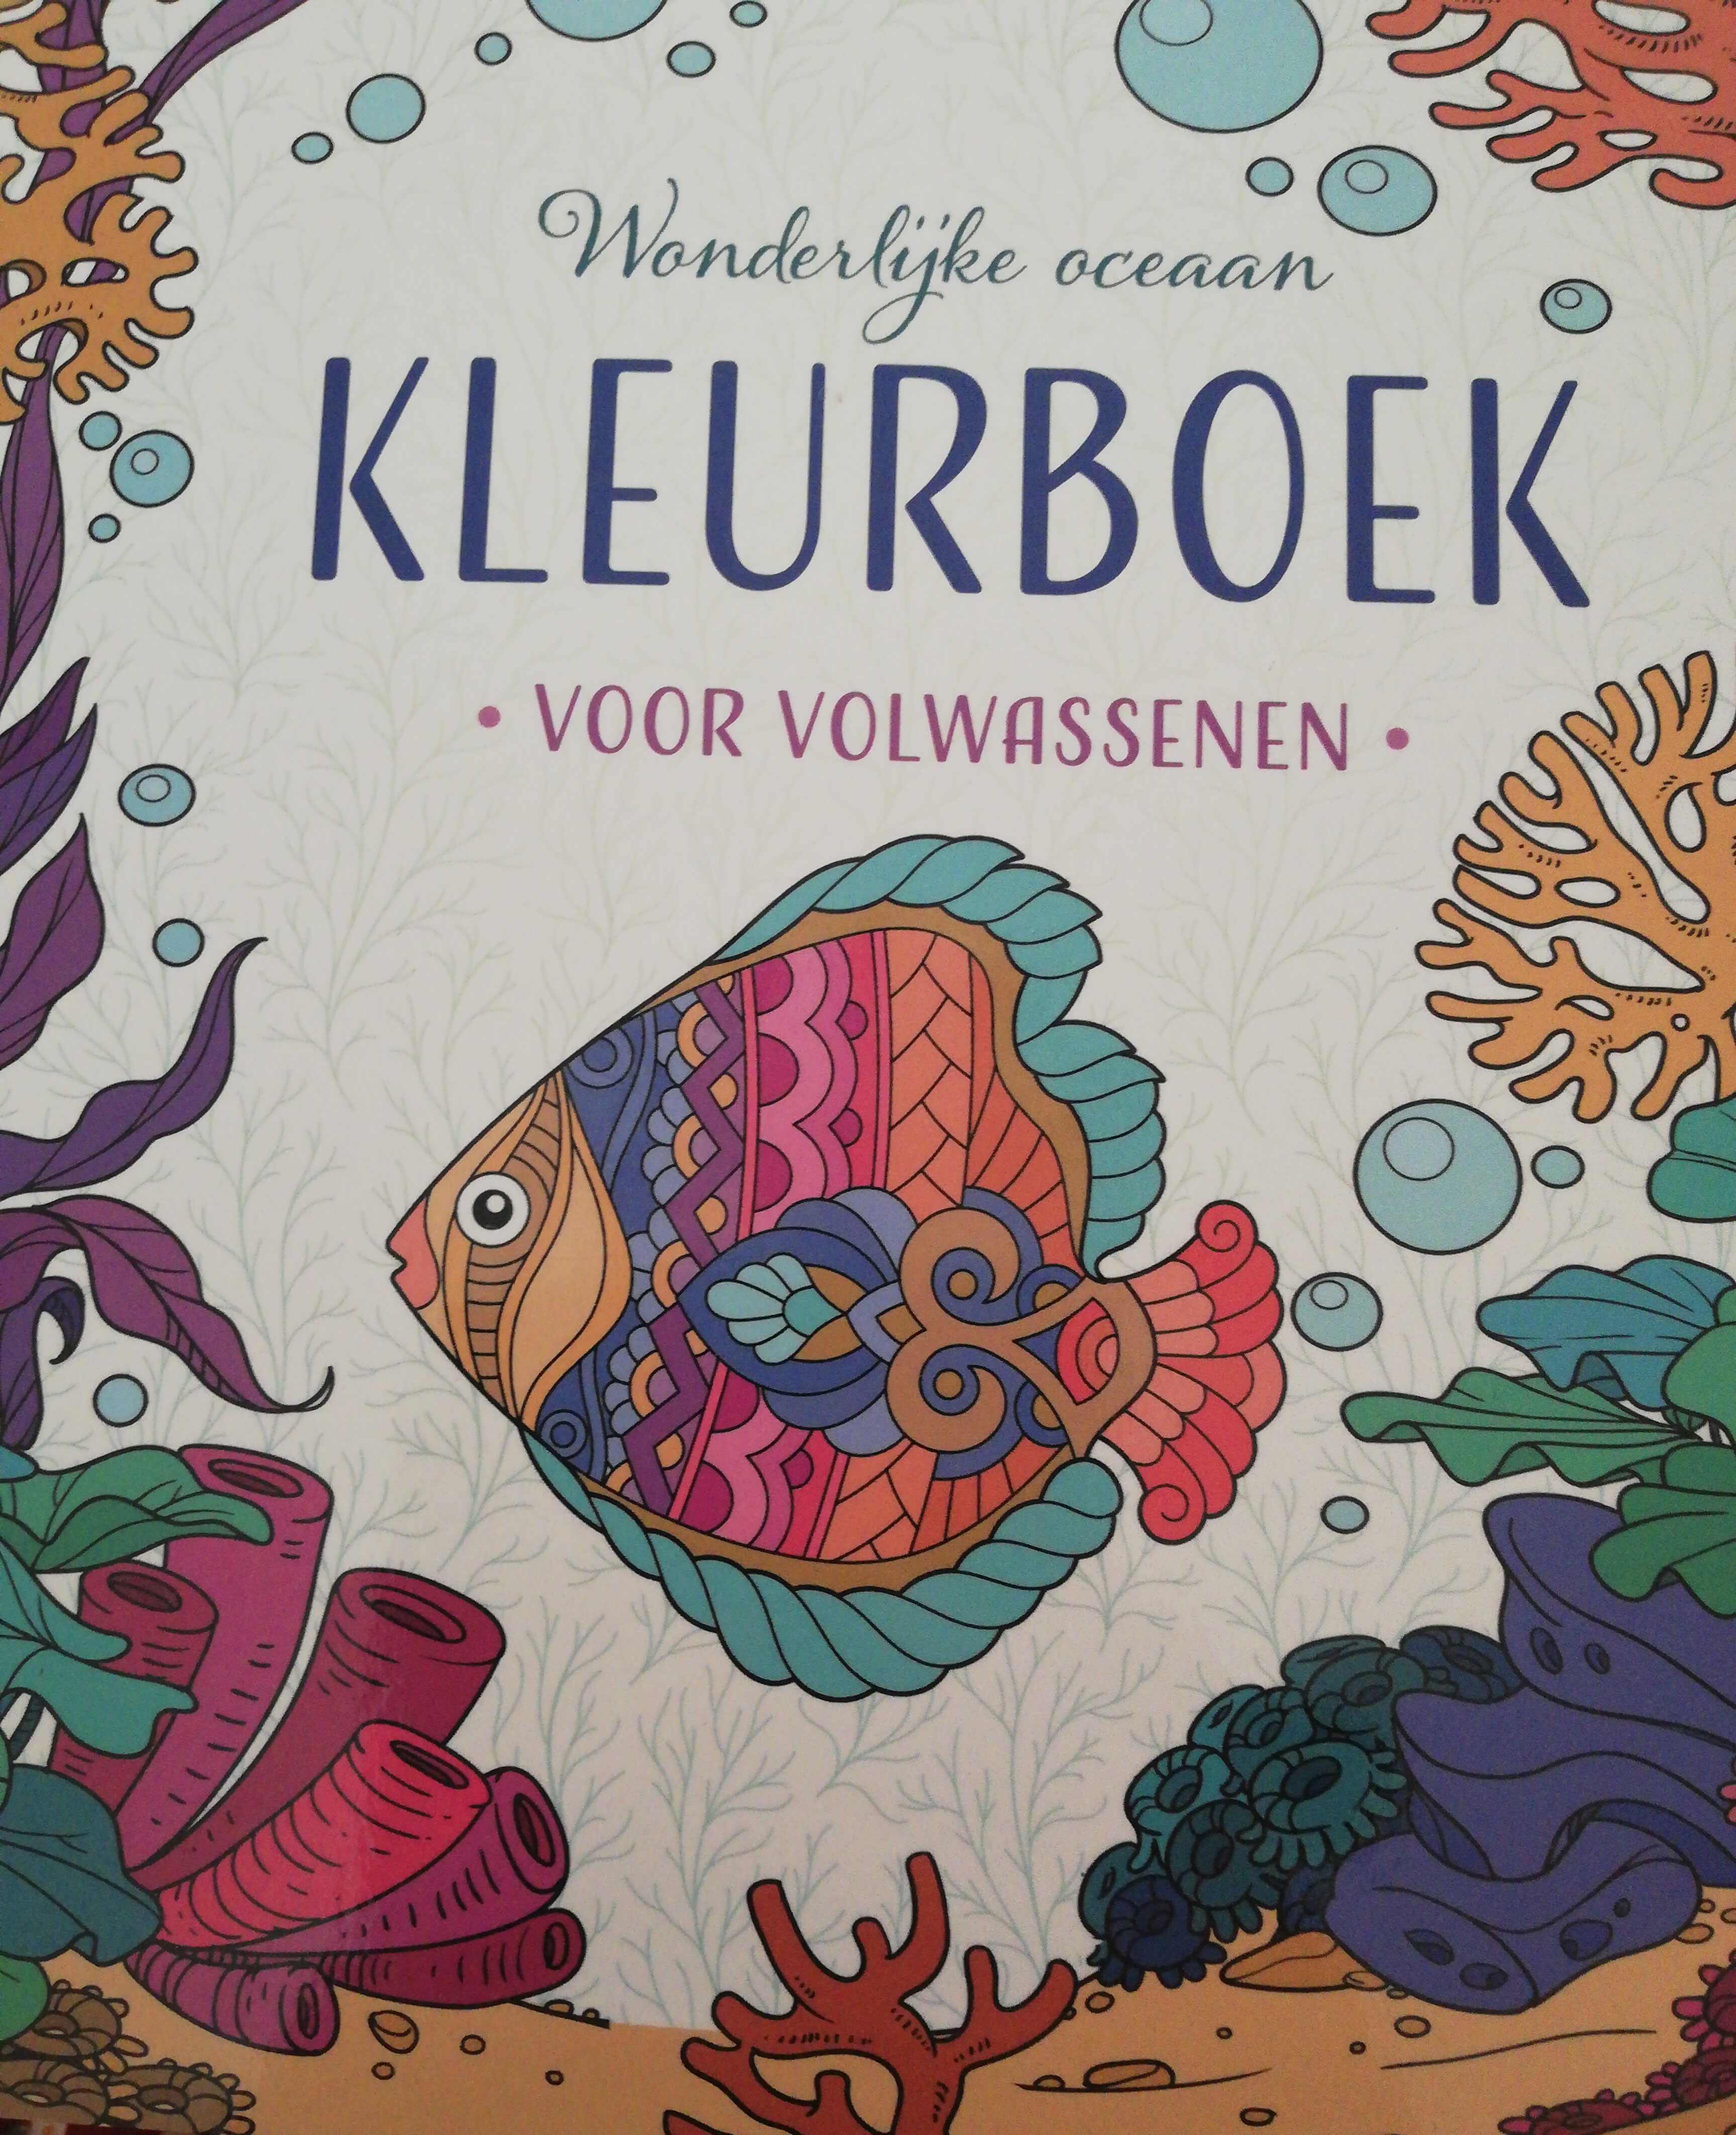 Wonderlijke oceaan kleurboek - Product - nl